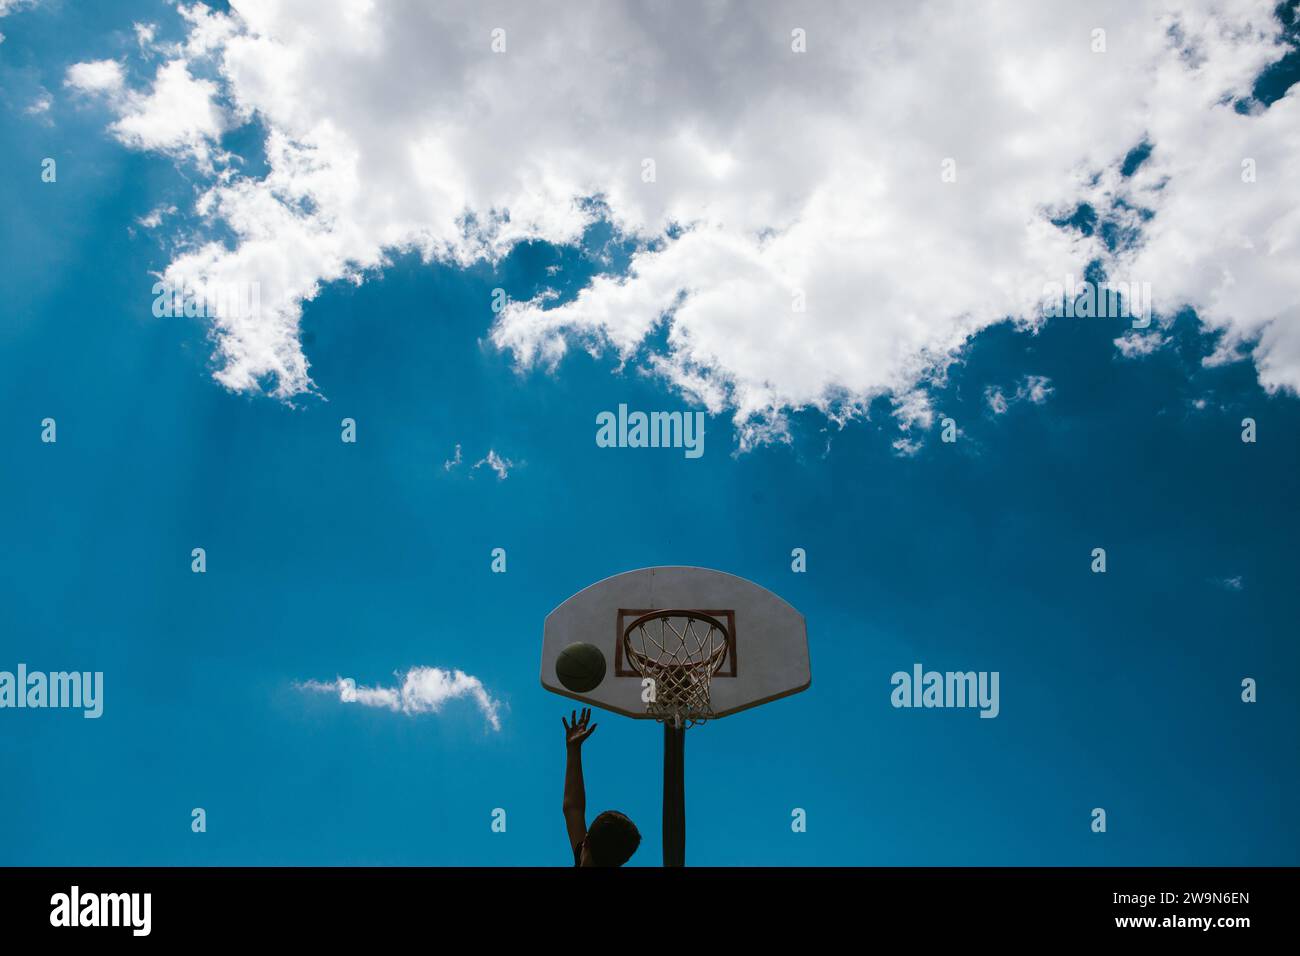 Junge, die sich am Basketballkorb erfinden, blauer Himmel mit Wolken Stockfoto